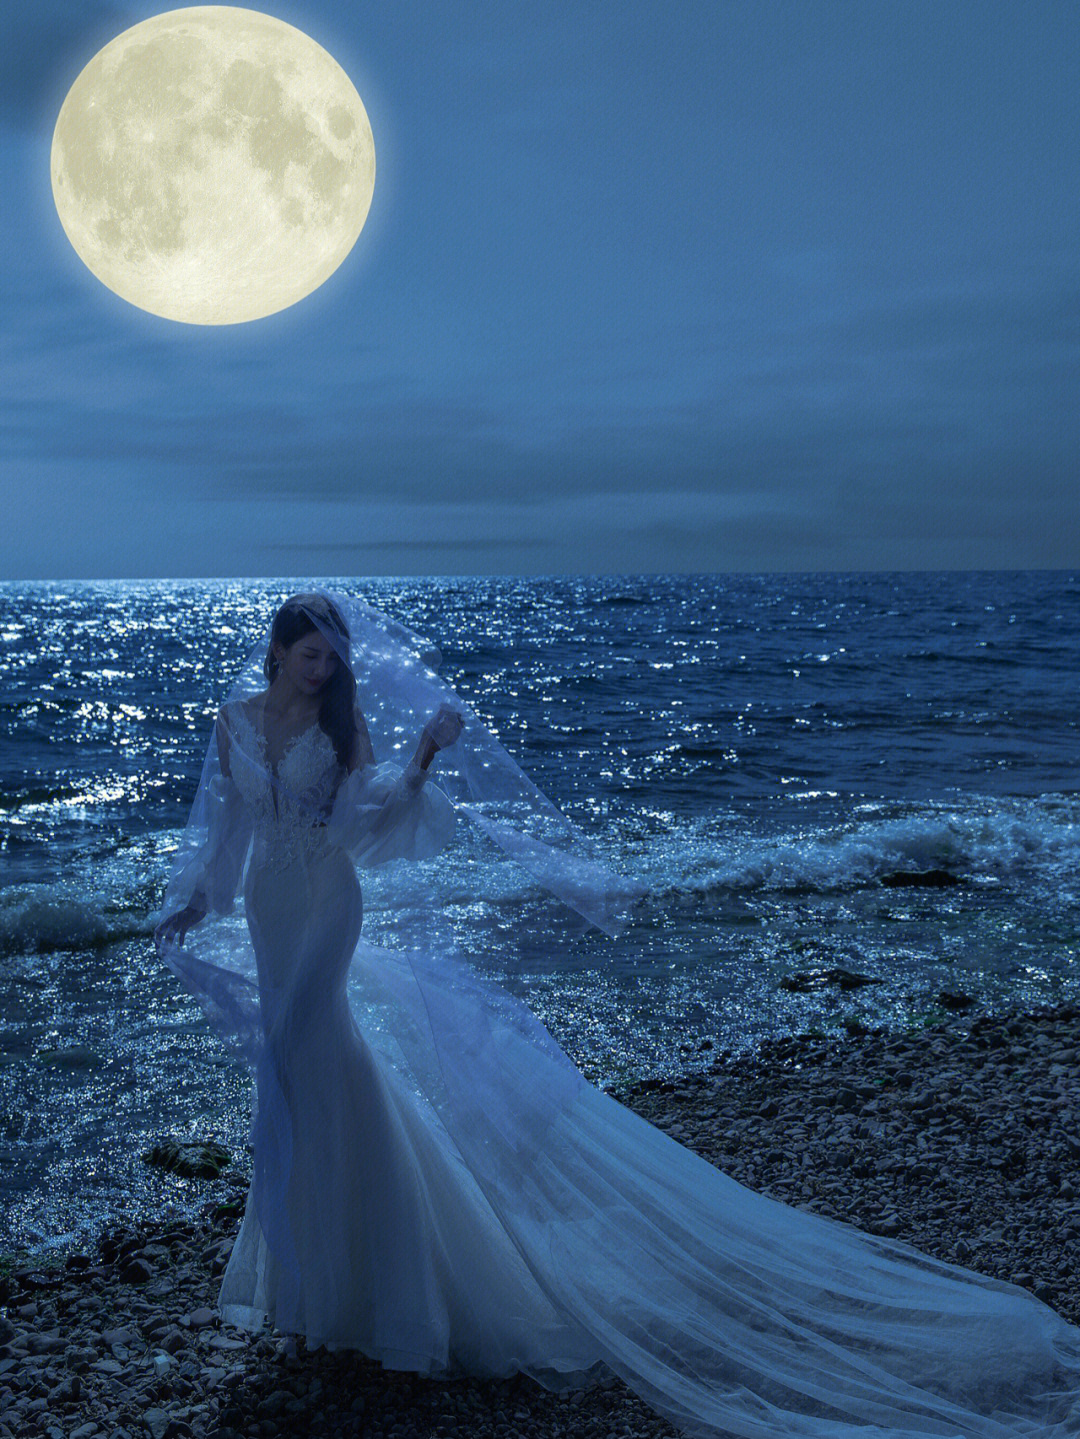 白月光下的婚纱照浪漫至极